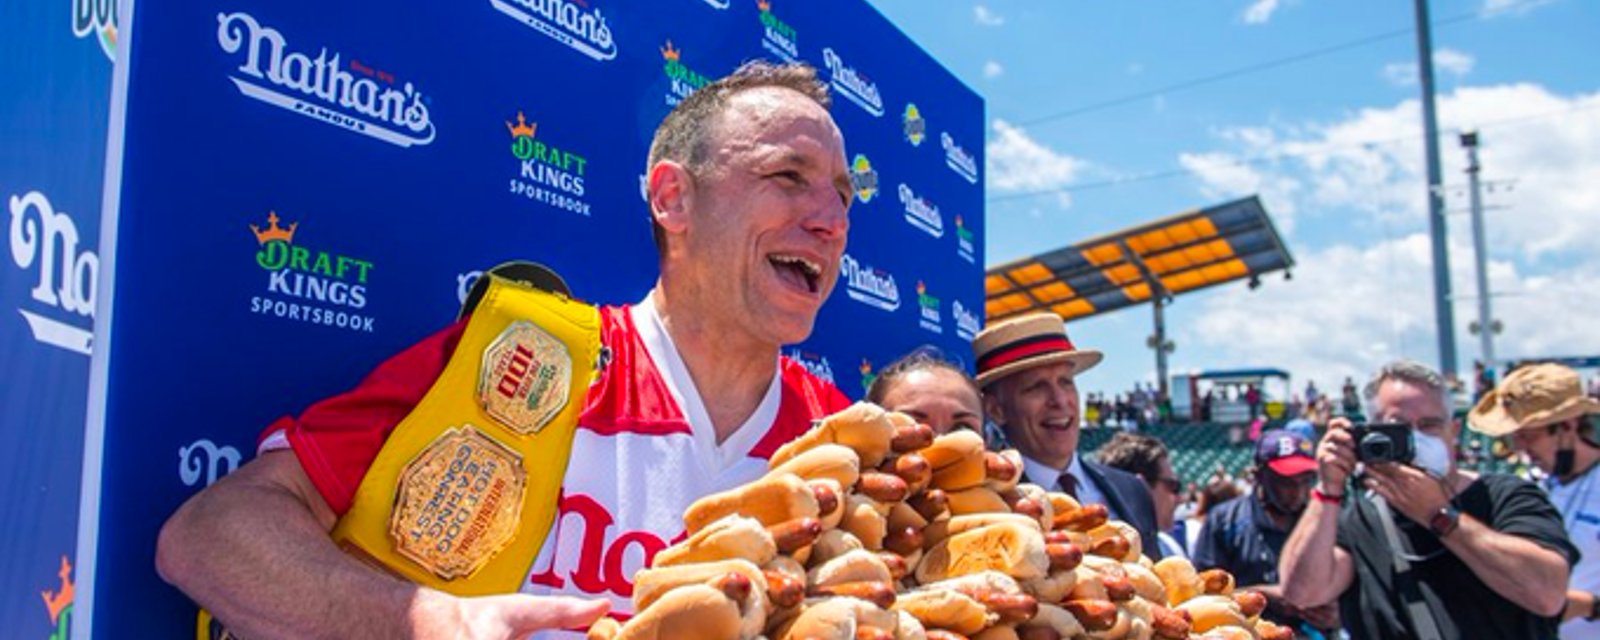 Joey Chestnut remporte son 15e championnat de mangeurs de hot dogs